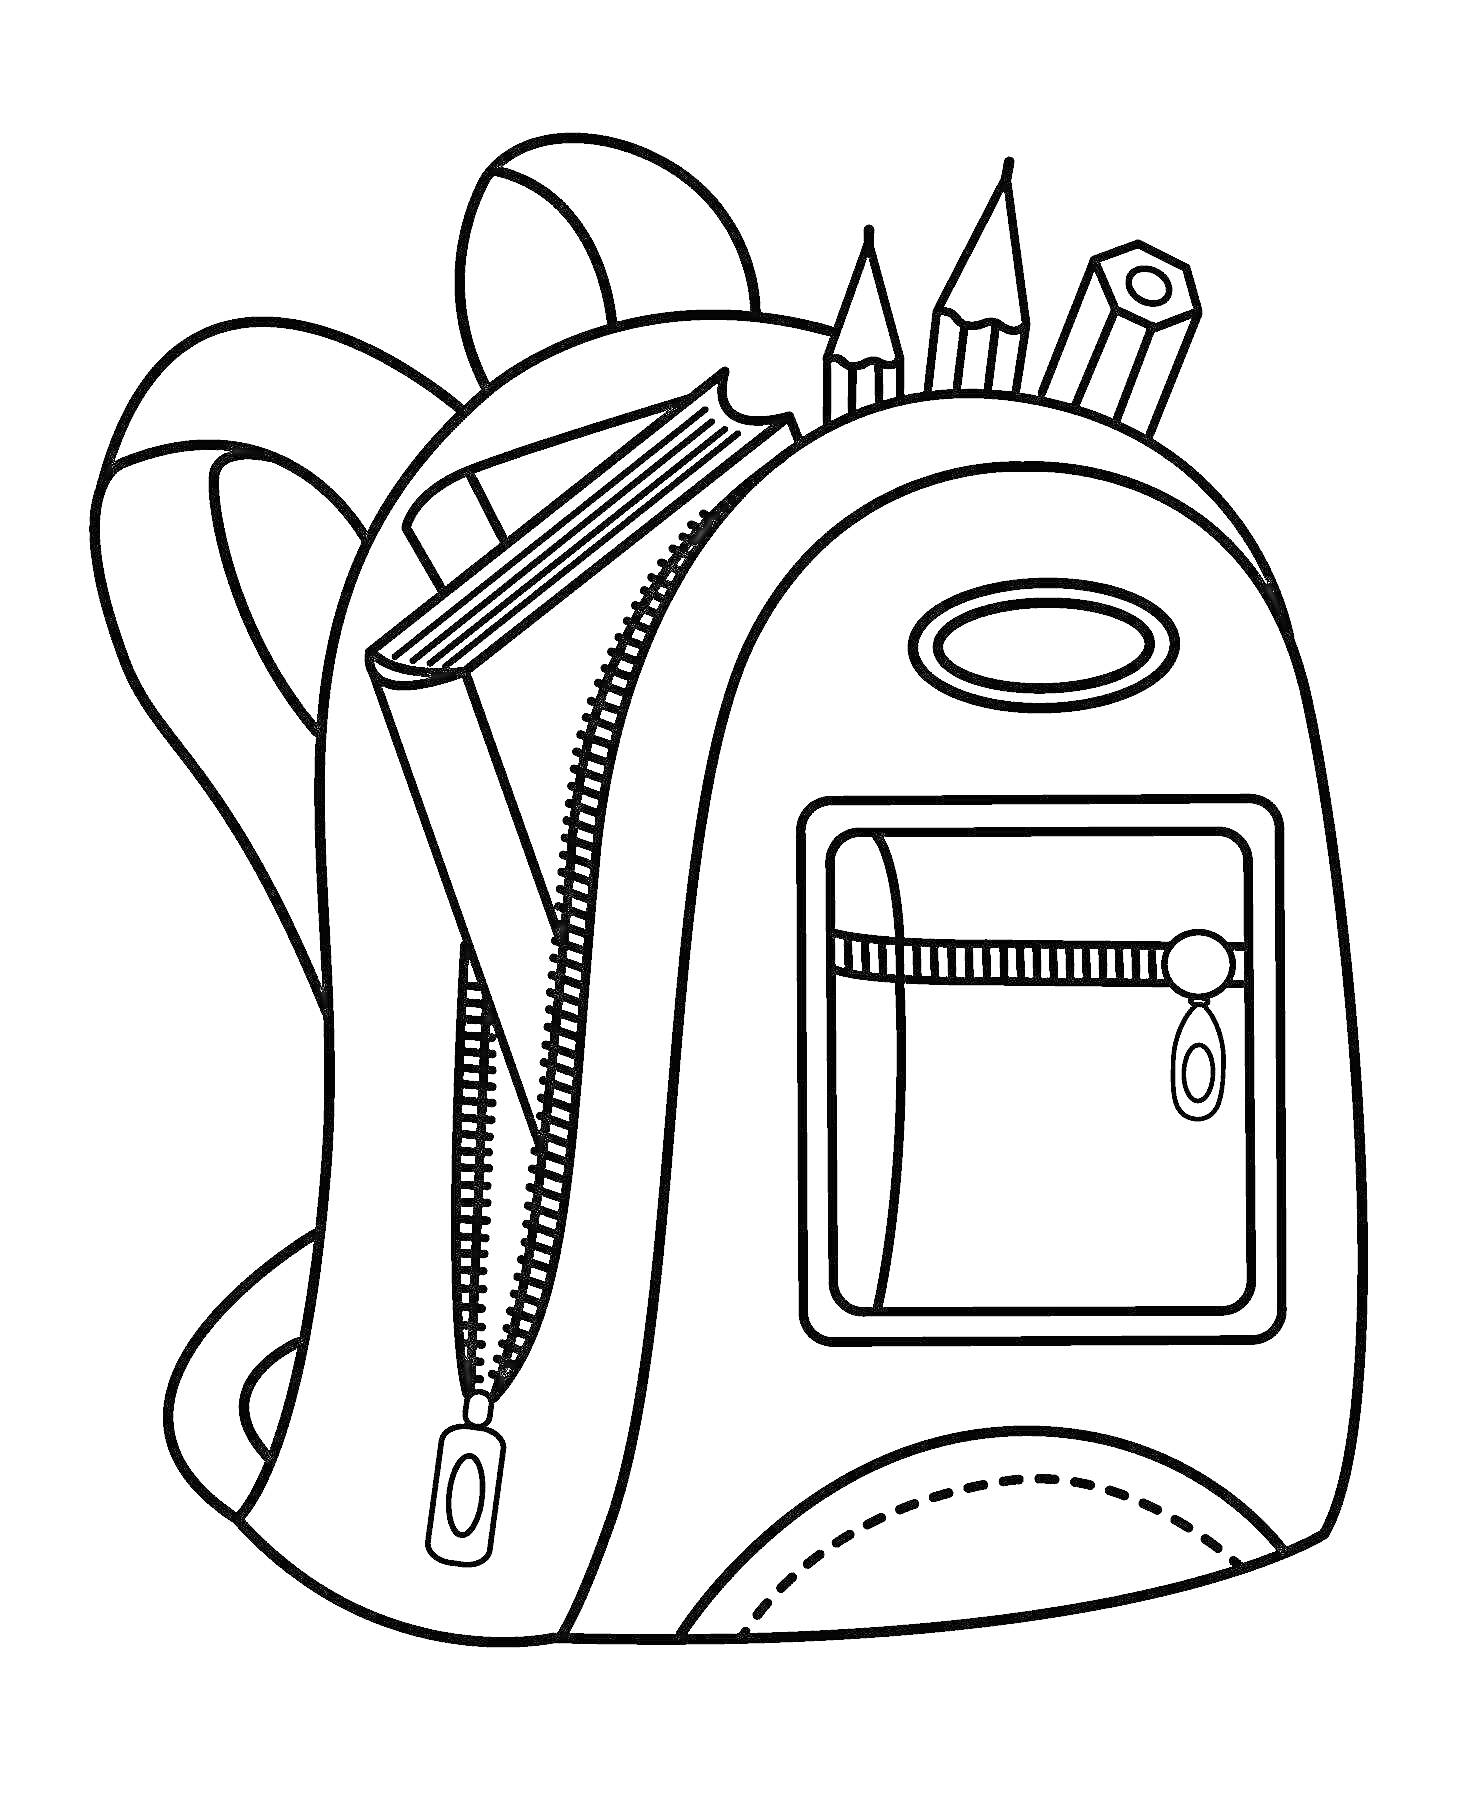 Рюкзак с застежками и школьными принадлежностями (книга, карандаши, фломастер)